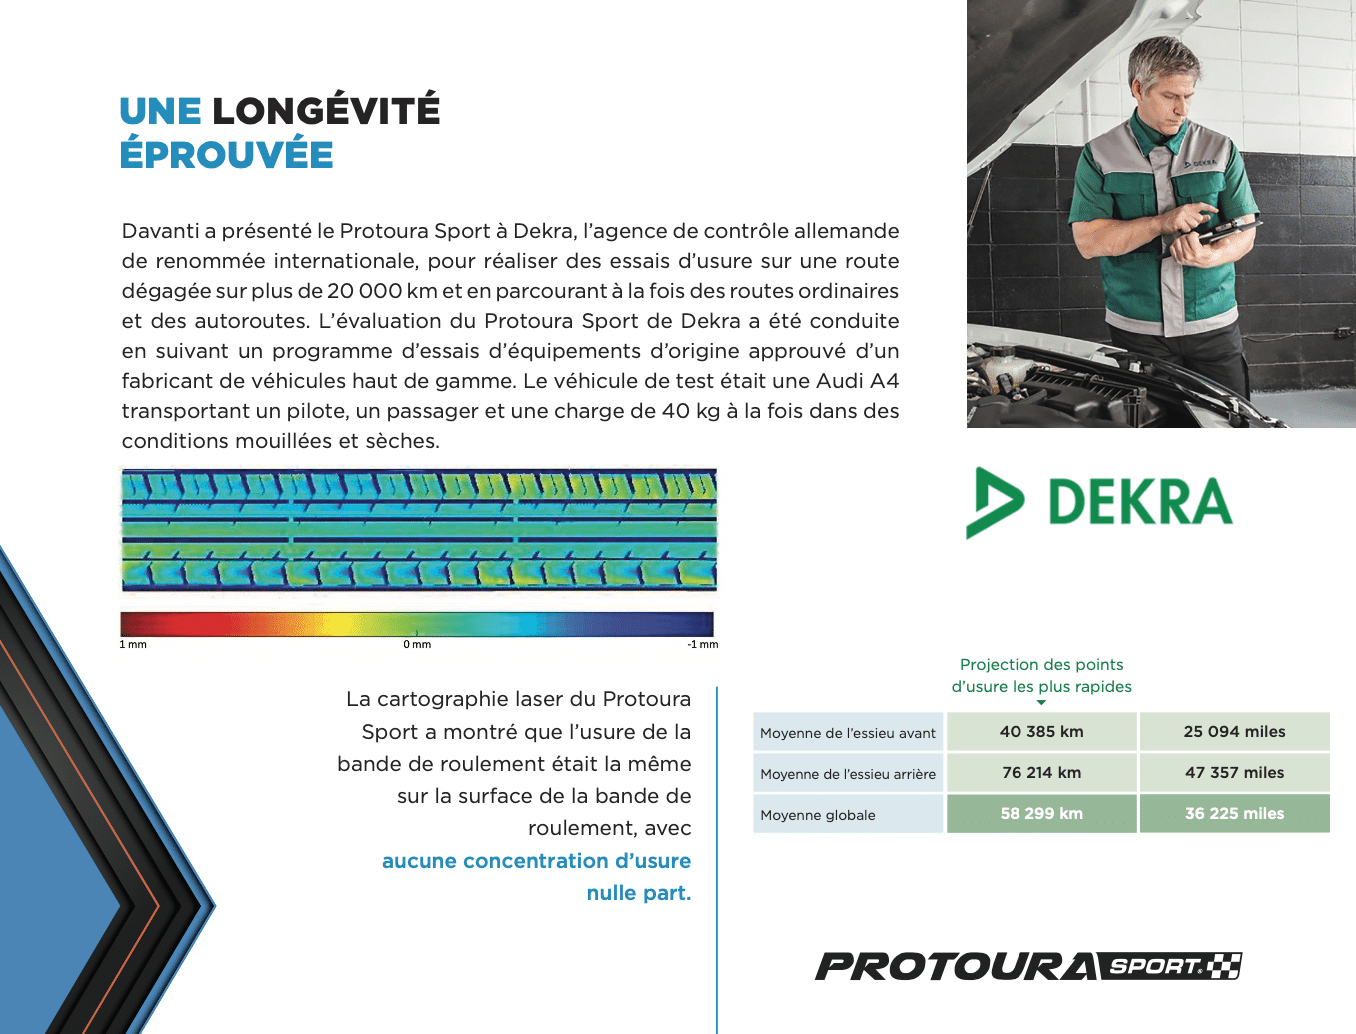 La cartographie laser du Protoura Sport a montré que l’usure de la bande de roulement était la même sur la surface de la bande de roulement, avec aucune concentration d’usure nulle part